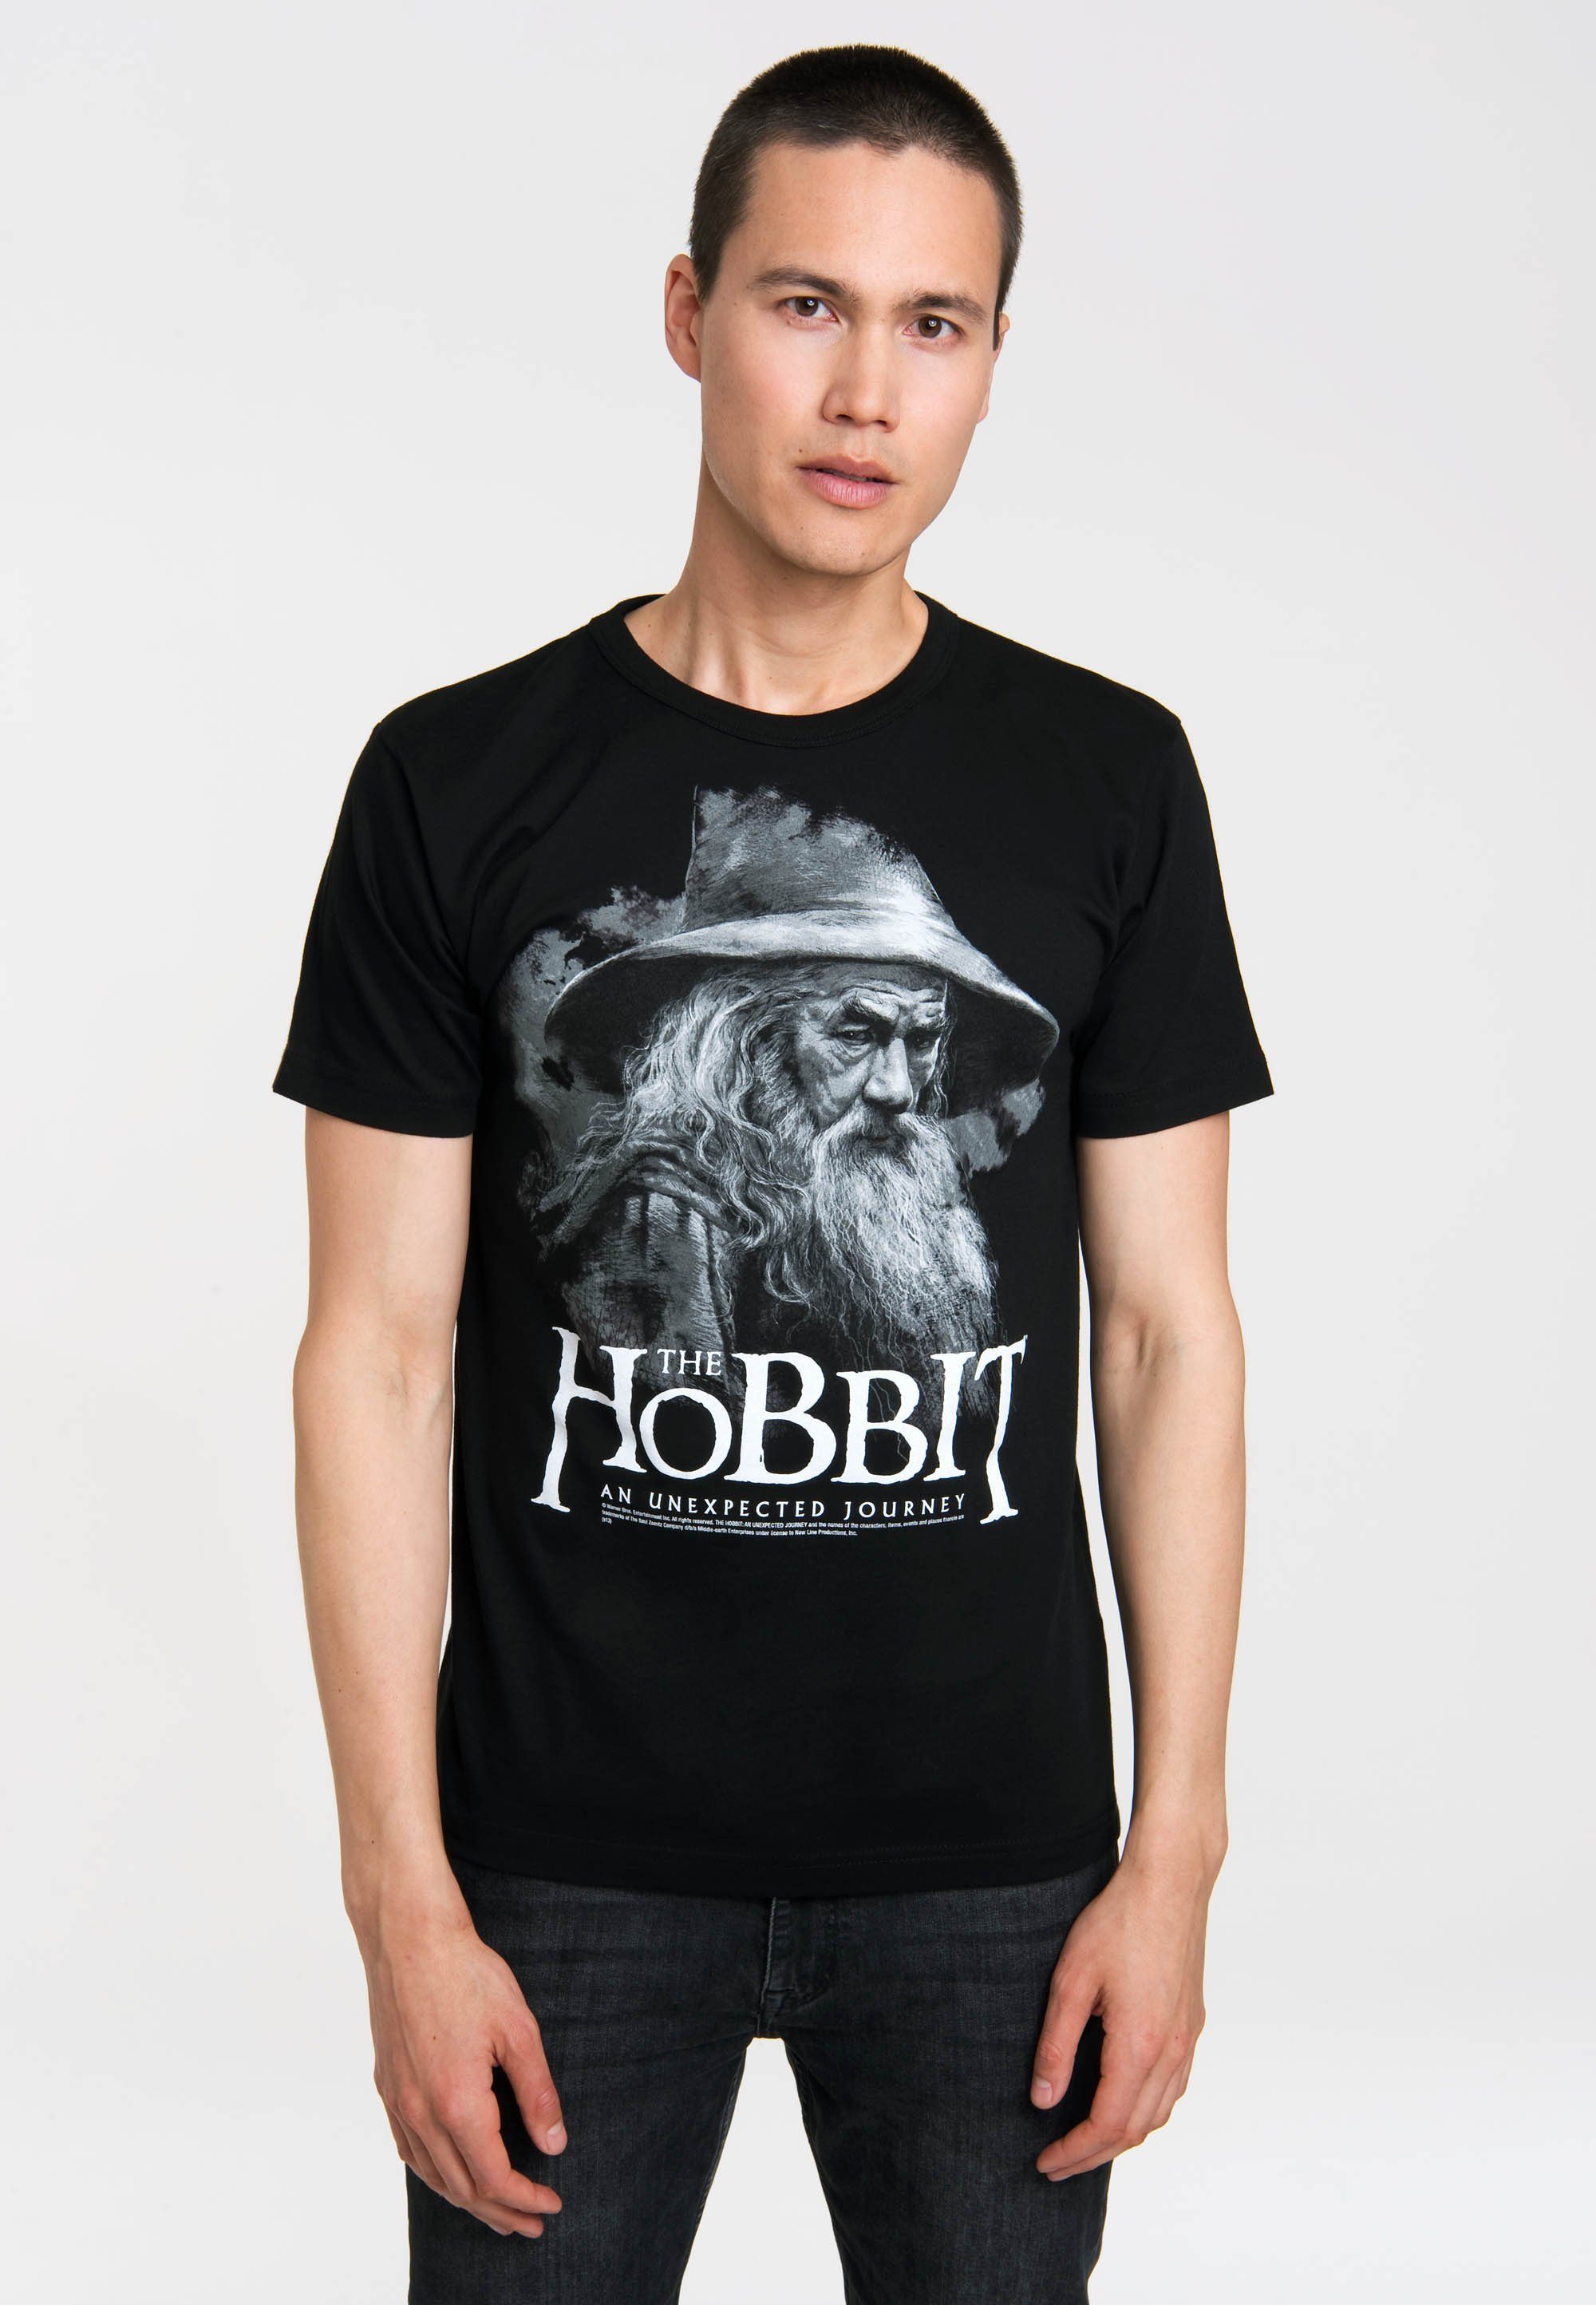 LOGOSHIRT Hobbit T-Shirt Siebdruck The großem mit